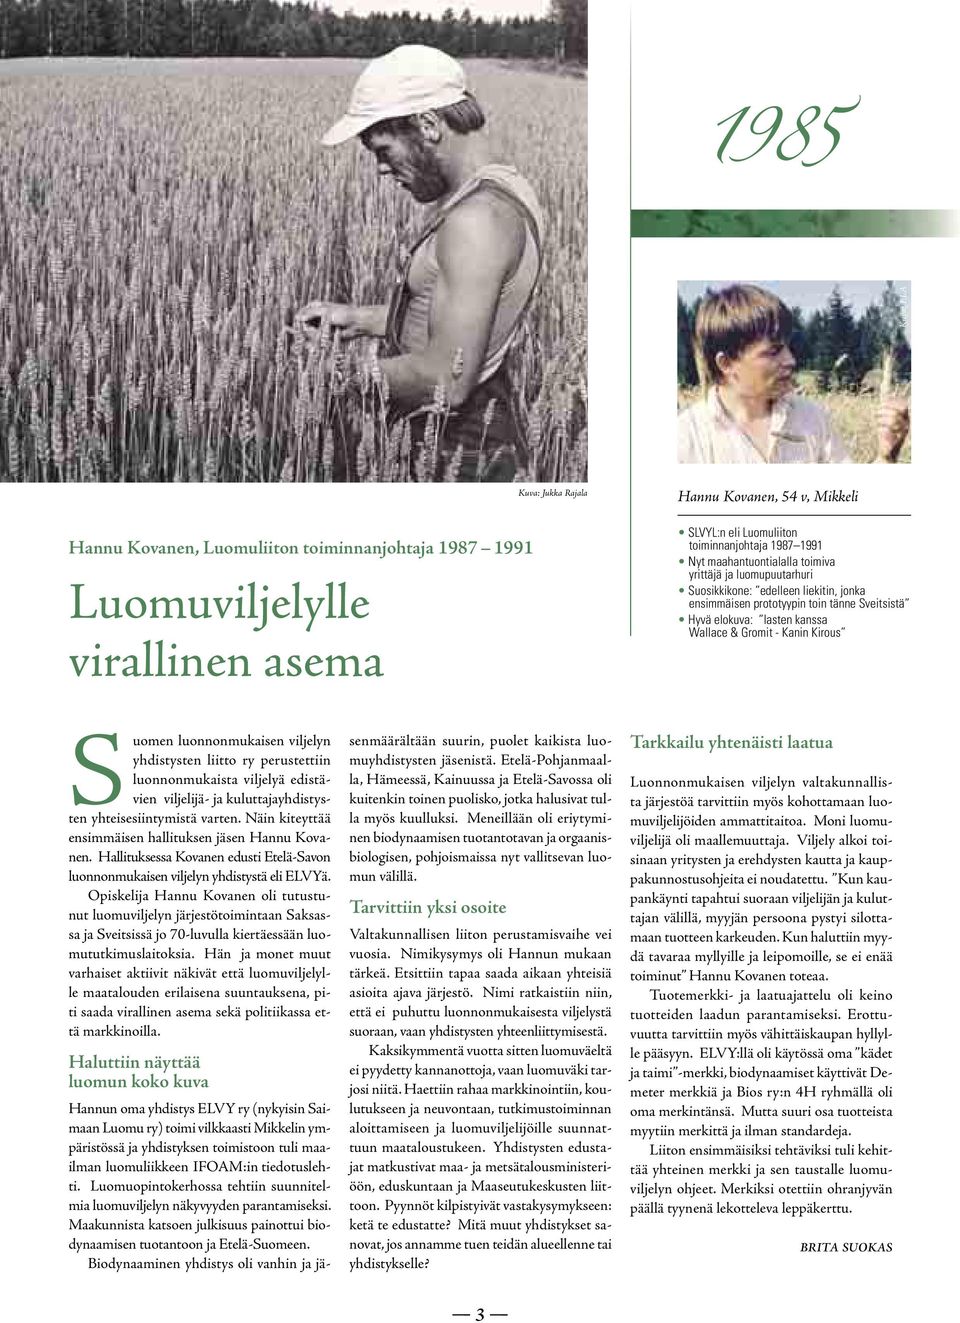 Suomen luonnonmukaisen viljelyn yhdistysten liitto ry perustettiin luonnonmukaista viljelyä edistävien viljelijä- ja kuluttajayhdistysten yhteisesiintymistä varten.